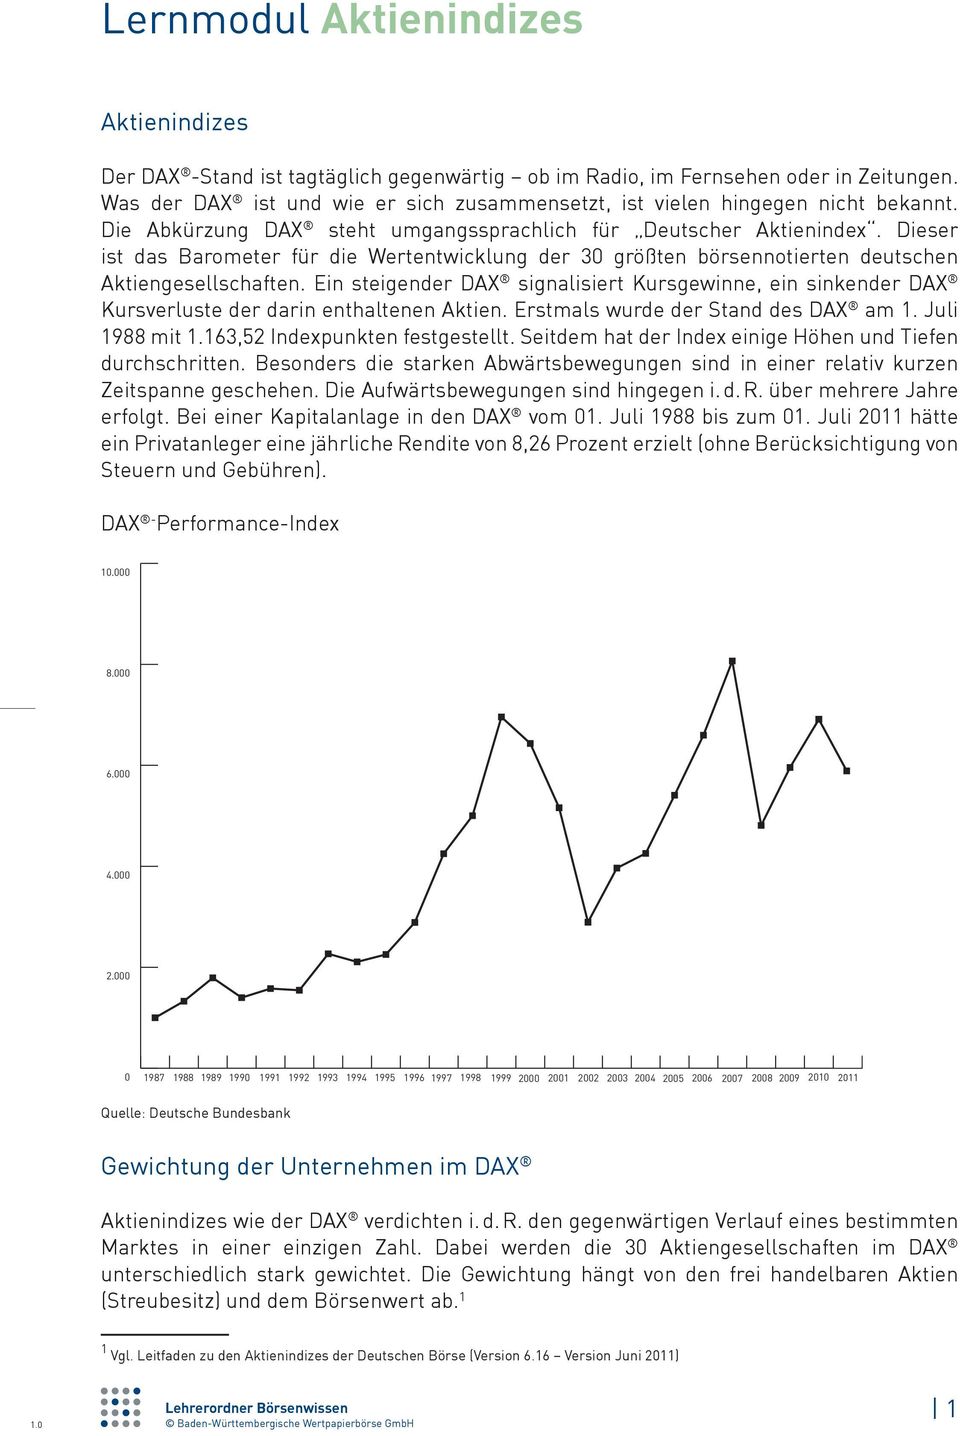 Ein steigender DAX signalisiert Kursgewinne, ein sinkender DAX Kursverluste der darin enthaltenen Aktien. Erstmals wurde der Stand des DAX am 1. Juli 1988 mit 1.163,52 Indexpunkten festgestellt.